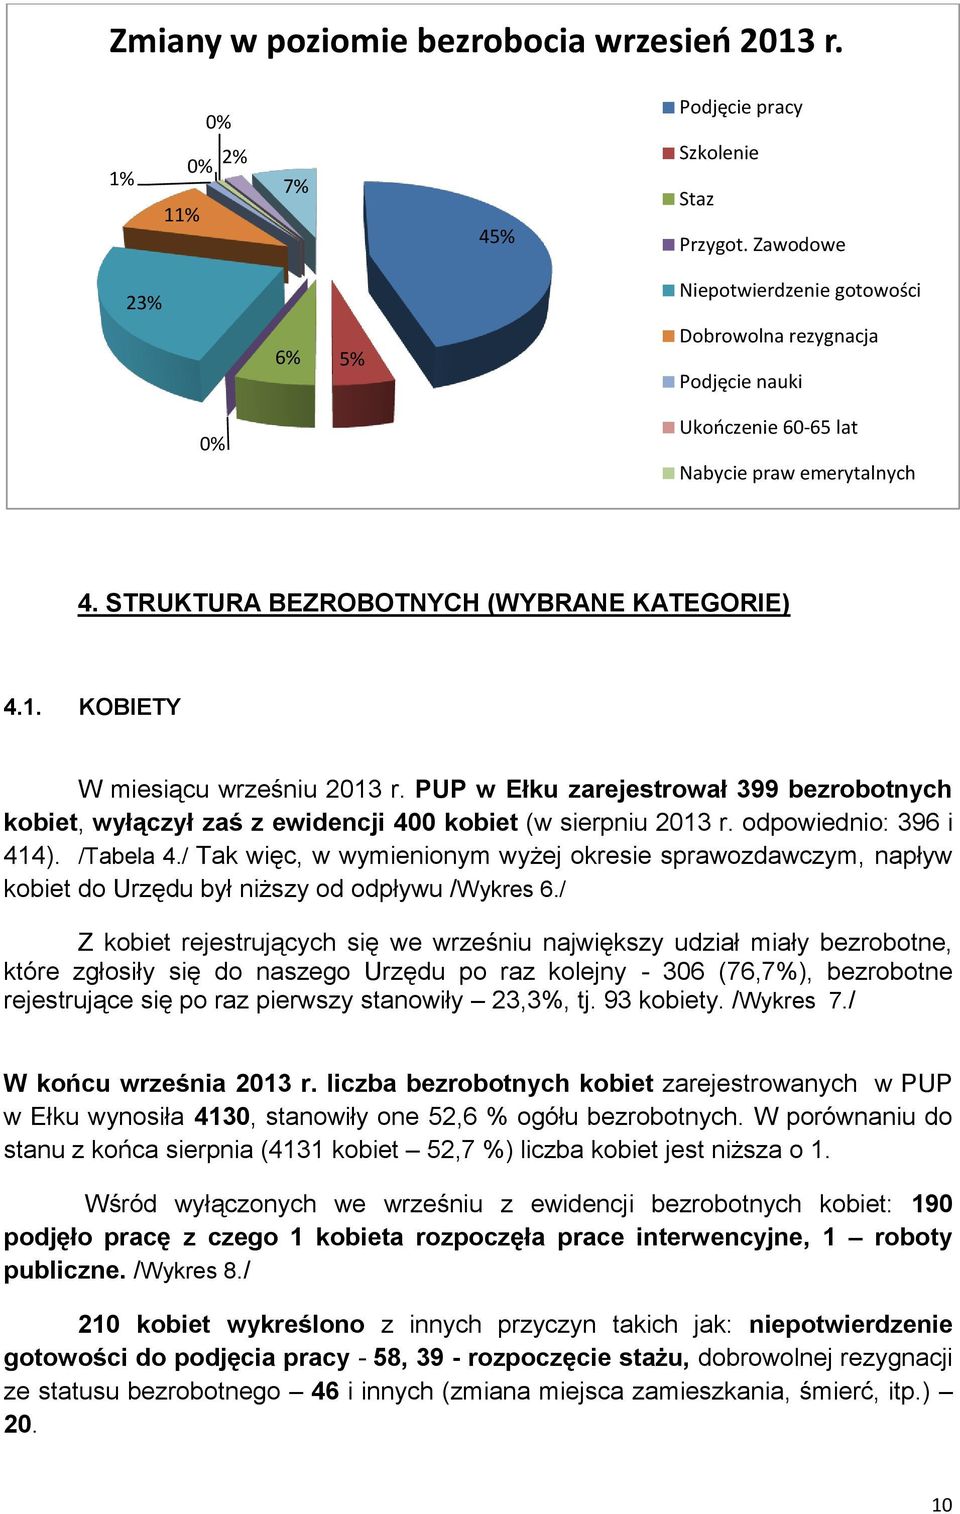 KOBIETY W miesiącu wrześniu 2013 r. PUP w Ełku zarejestrował 399 bezrobotnych kobiet, wyłączył zaś z ewidencji 400 kobiet (w sierpniu 2013 r. odpowiednio: 396 i 414). /Tabela 4.